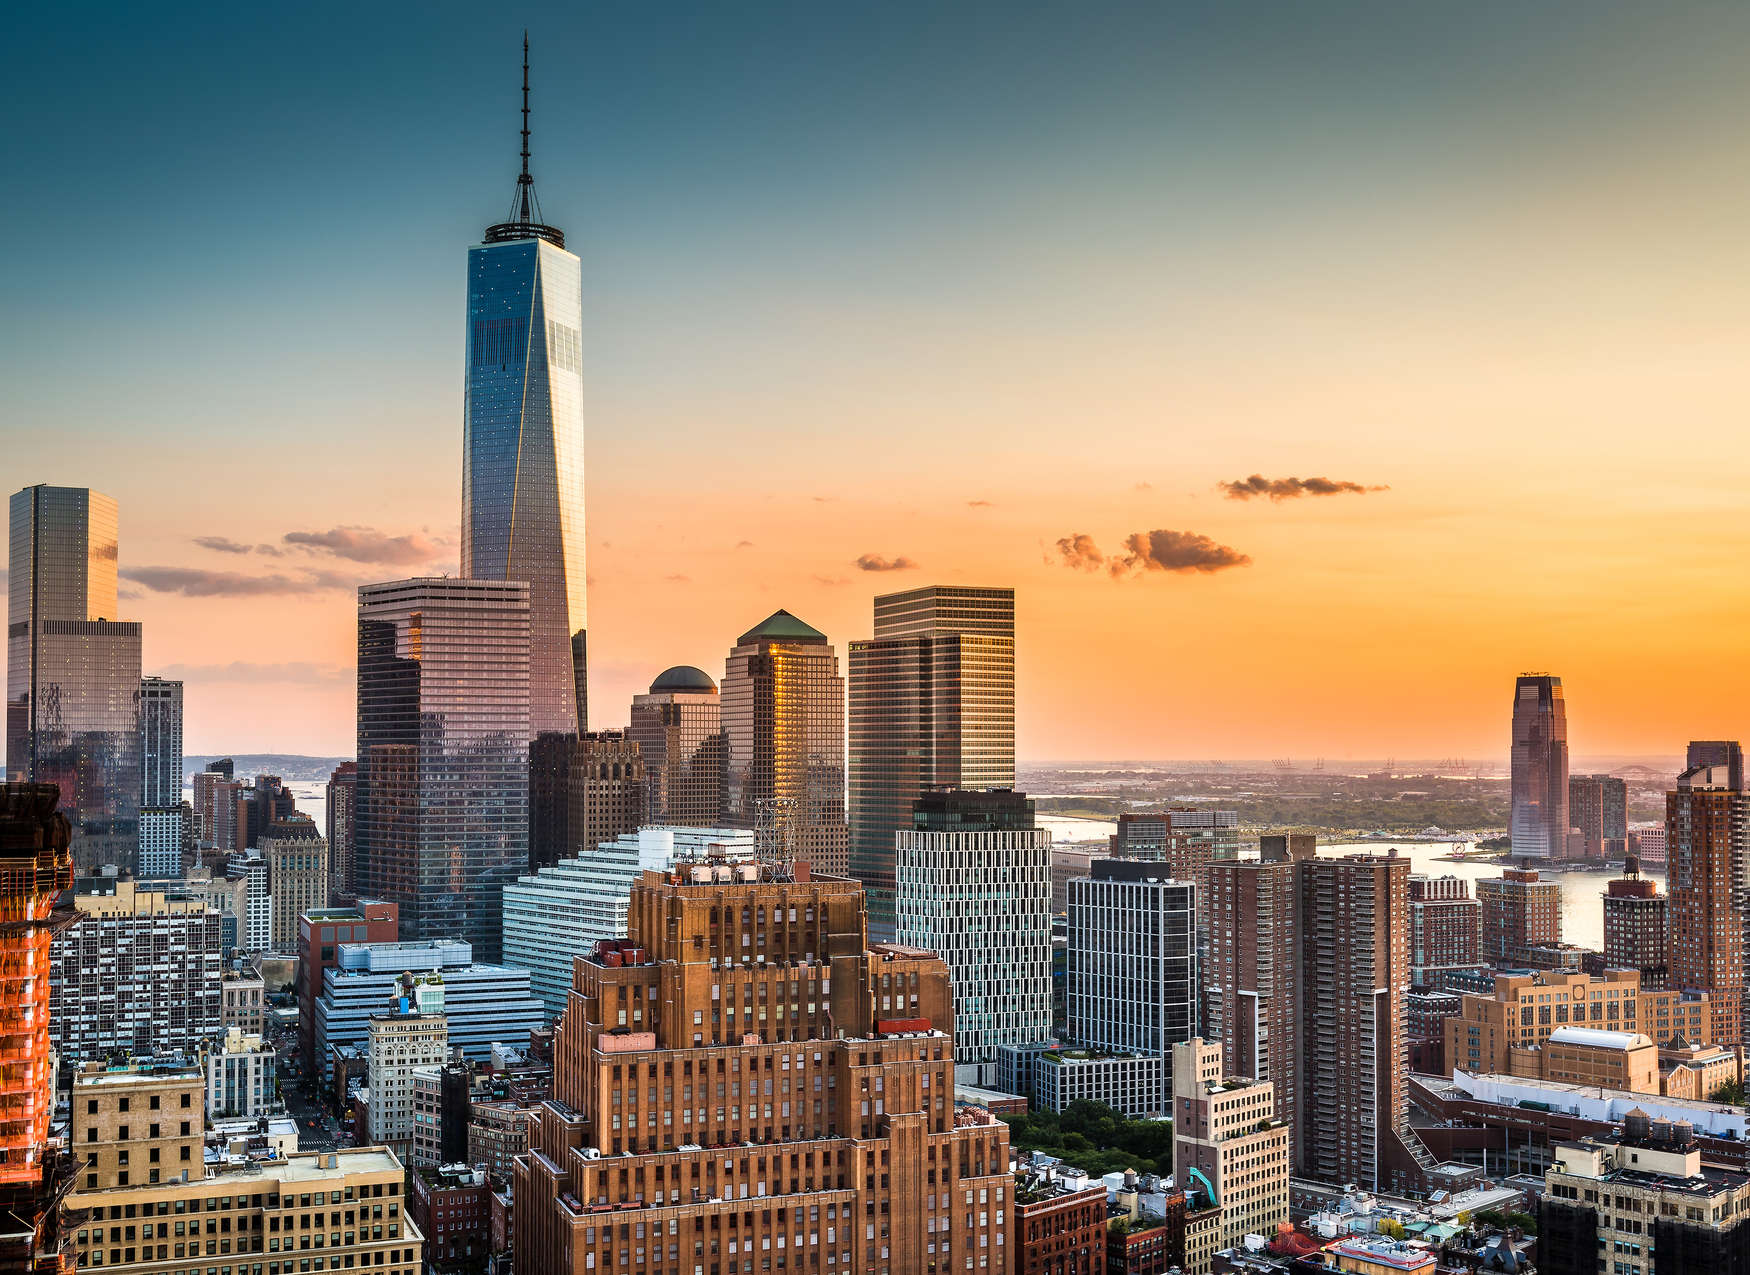             Digital behang met Manhattan skyline bij zonsondergang - Geel, Bont
        